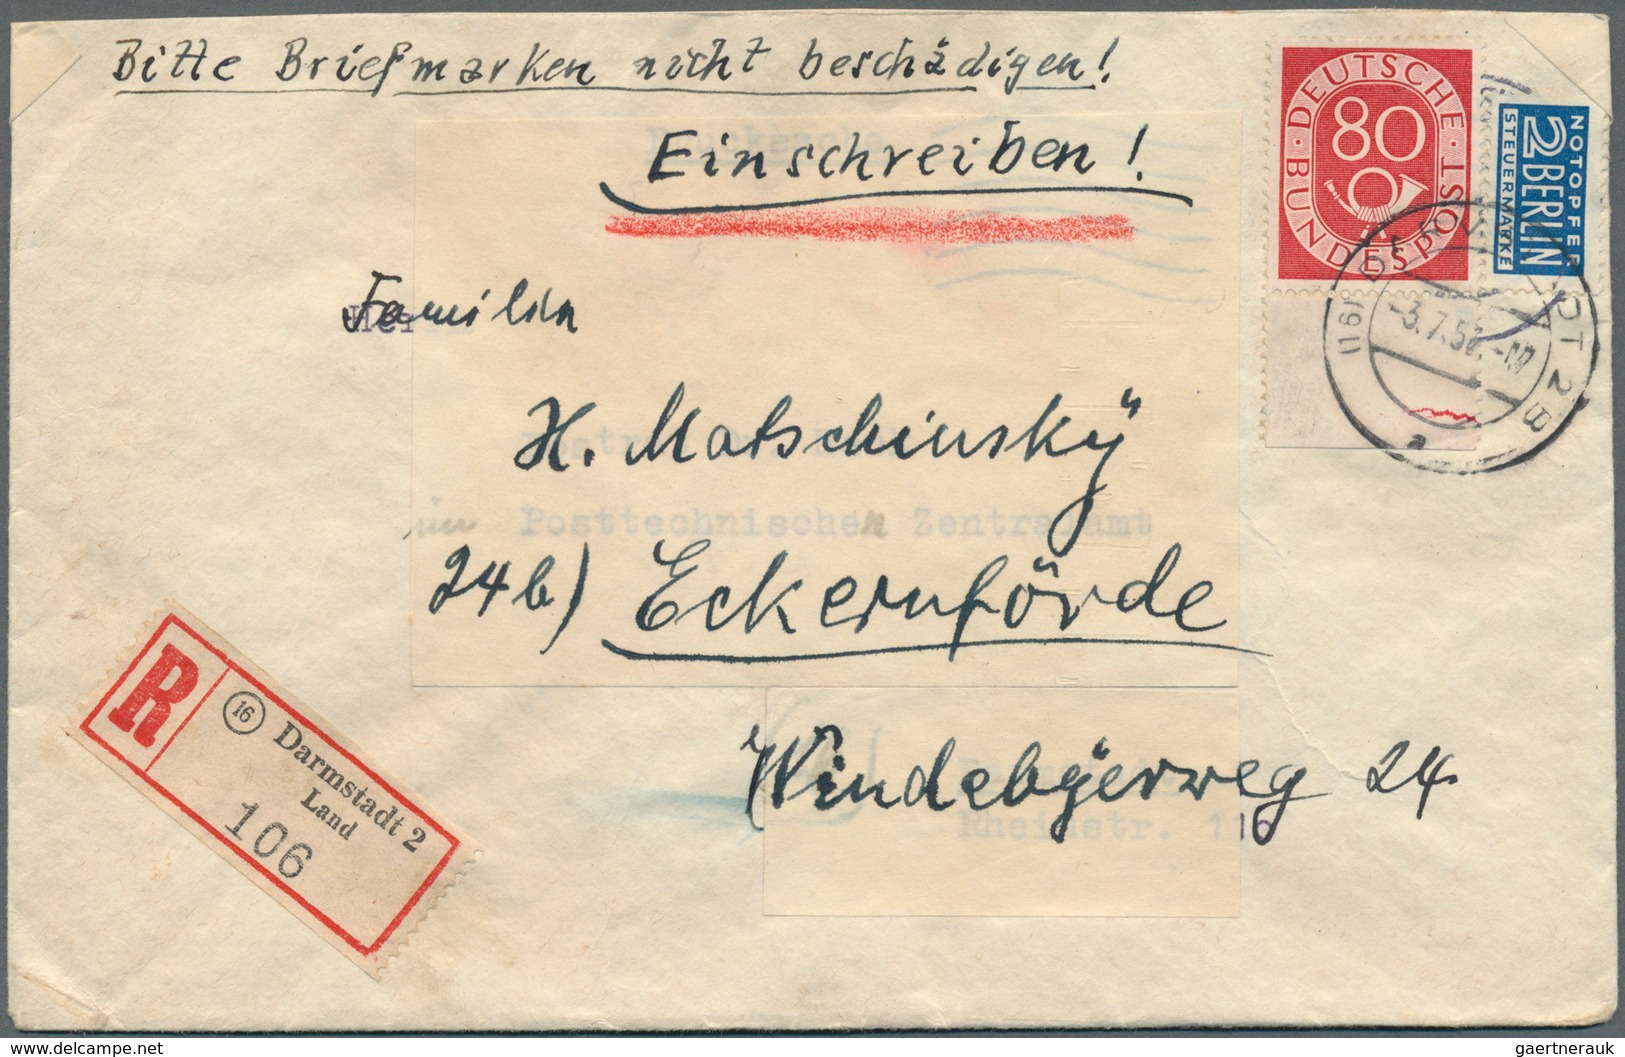 32688 Bundesrepublik Deutschland: 1949/1960, nette Partie von über 50 Briefen und Karten mit meist Sonderm